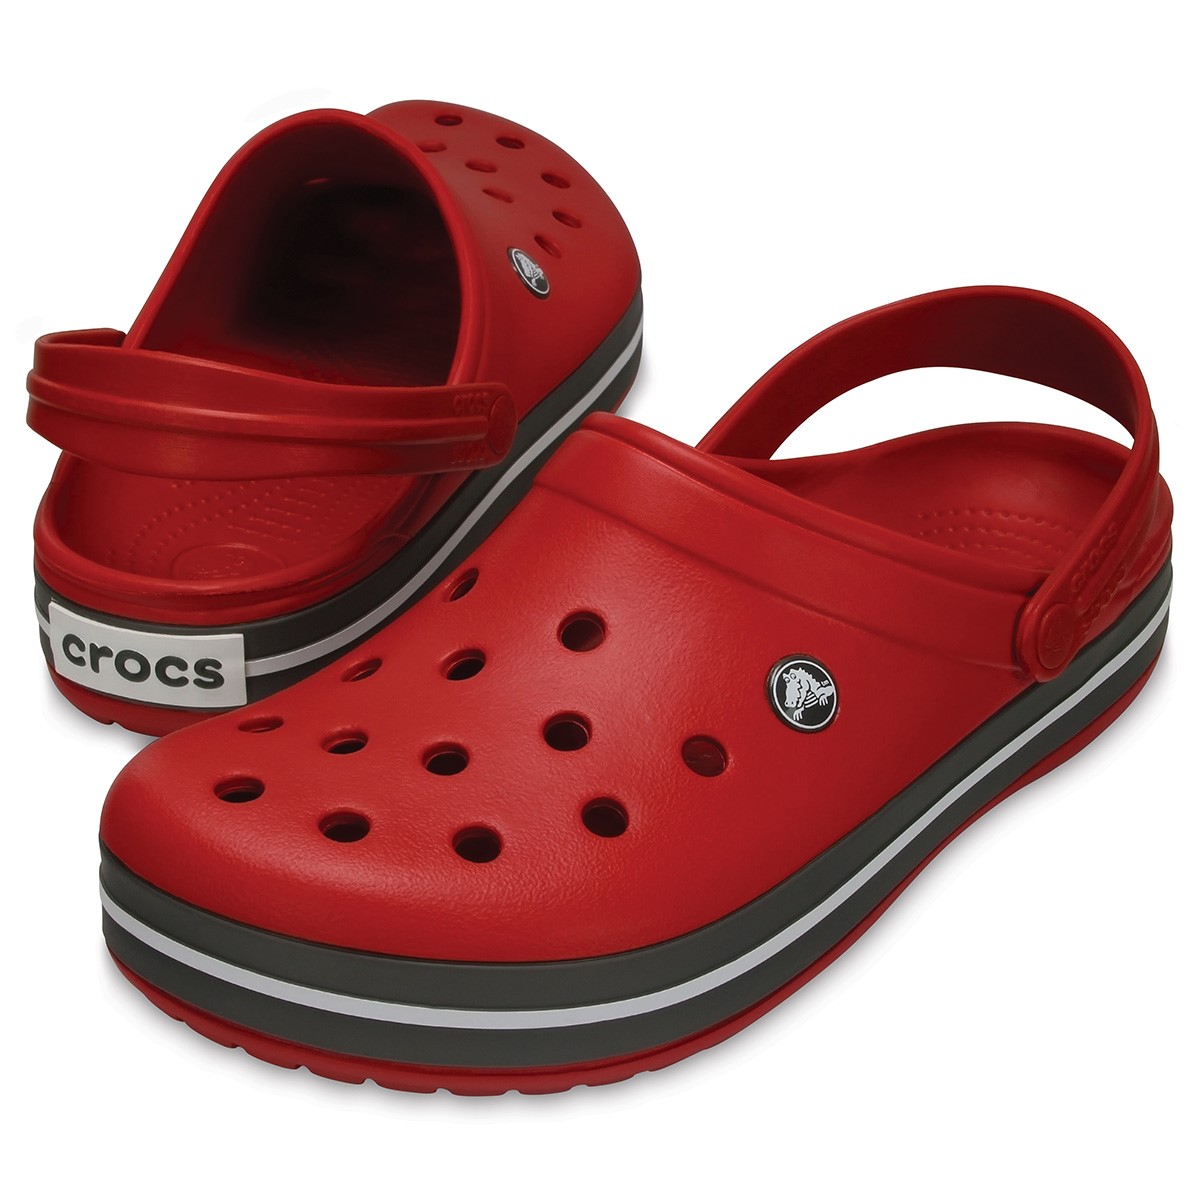 Crocs Unisex Sandalet 11016 Pepper